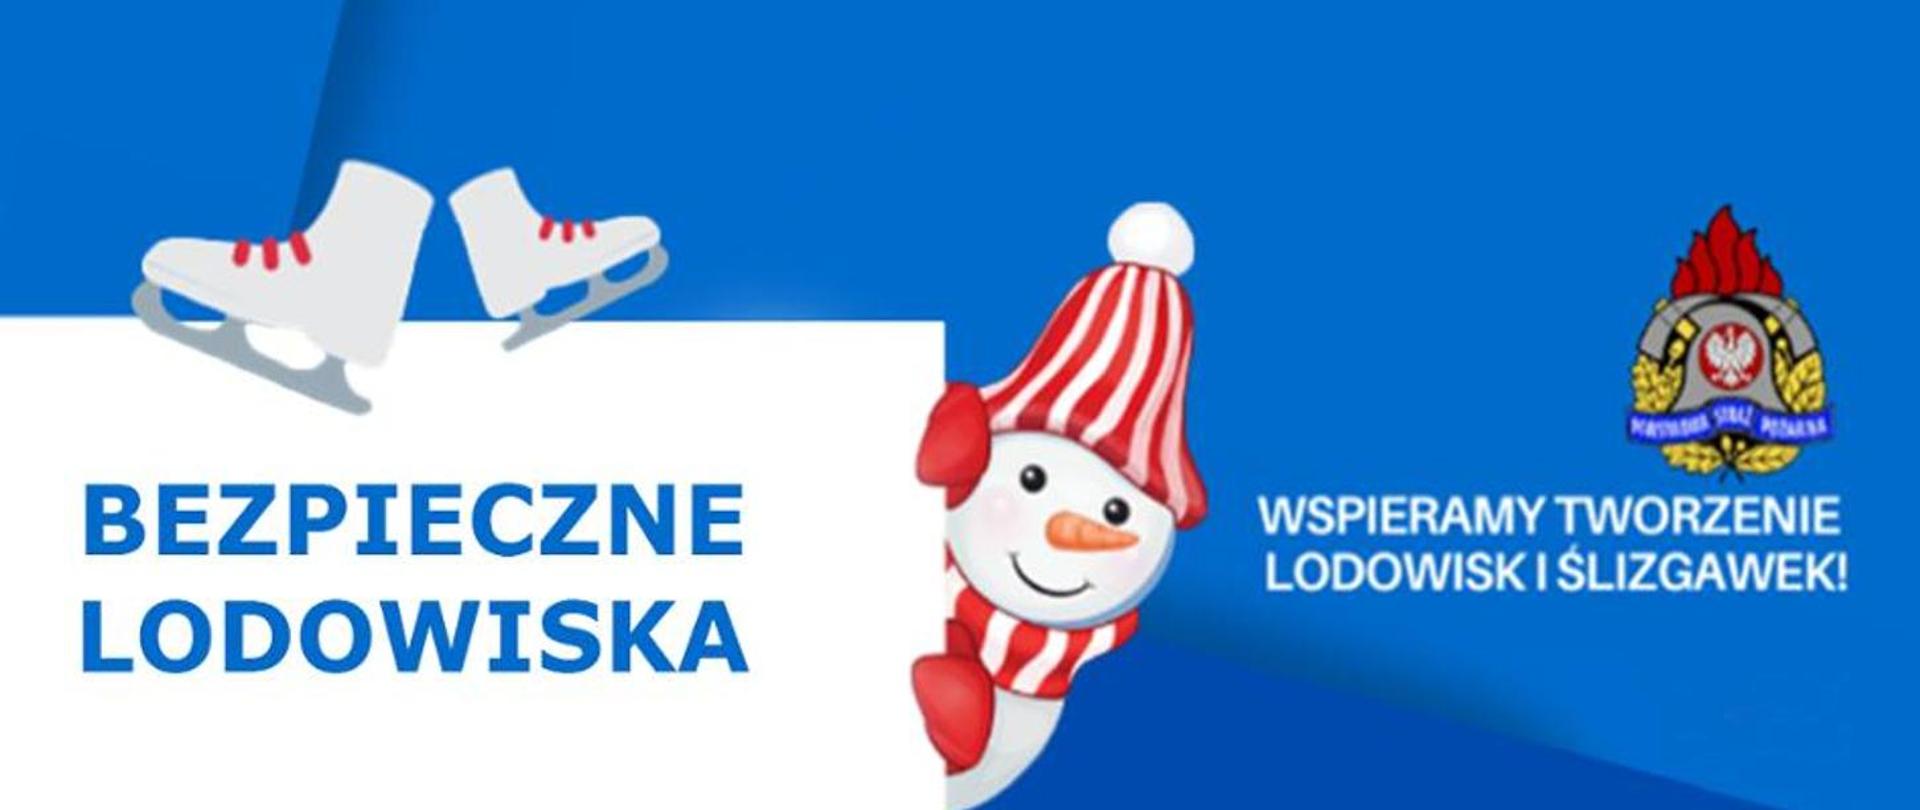 Bezpieczne lodowiska logo z Mikołajem, łyżwami ii logo PSP